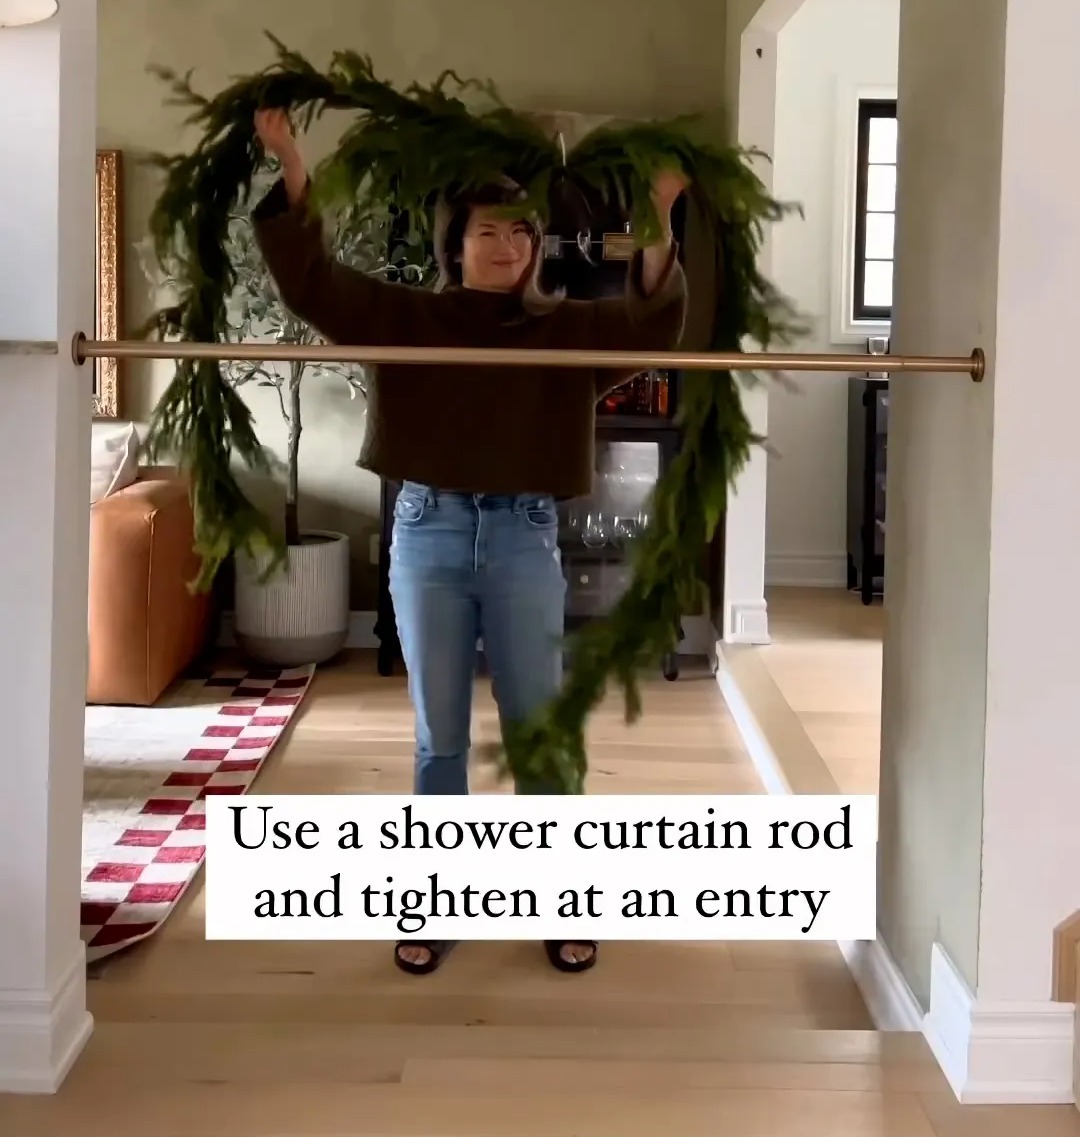 Wendy benutzte eine alte Duschvorhangstange, um ihre festliche Dekoration in ihrer Tür aufzuhängen, ohne Löcher bohren zu müssen